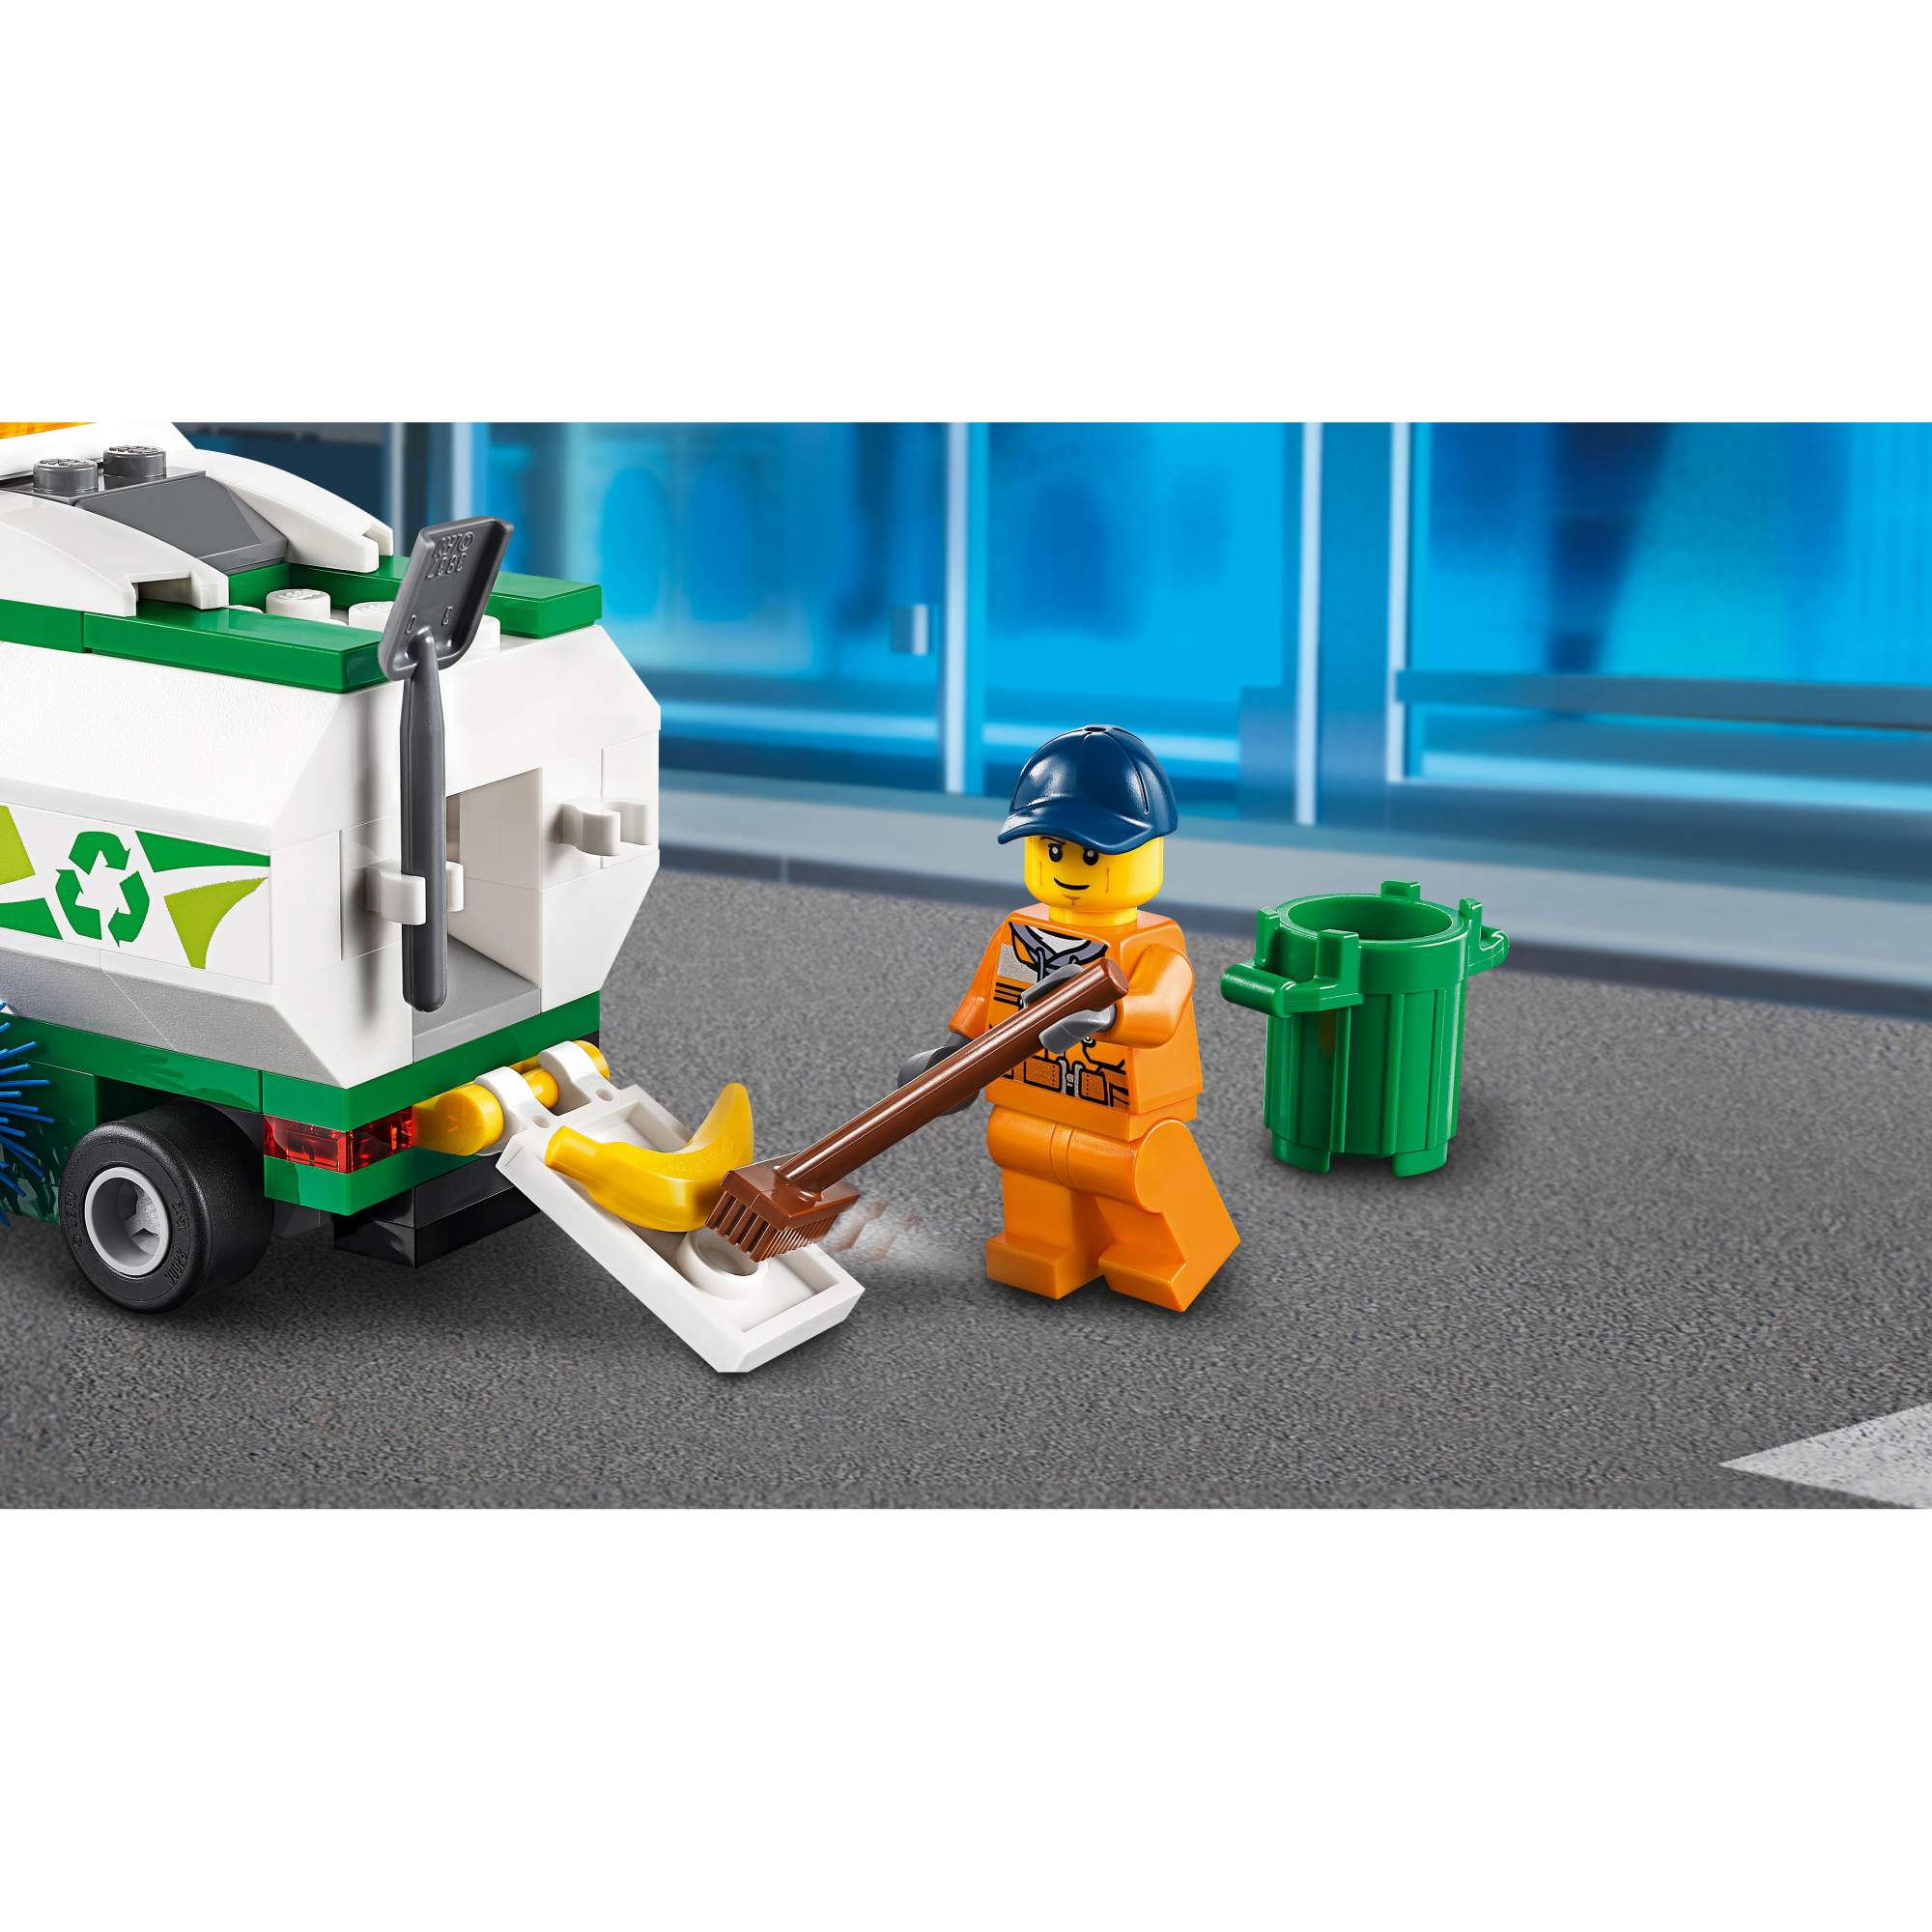 Конструктор LEGO City Great Vehicles 60249 Машина для очистки улиц